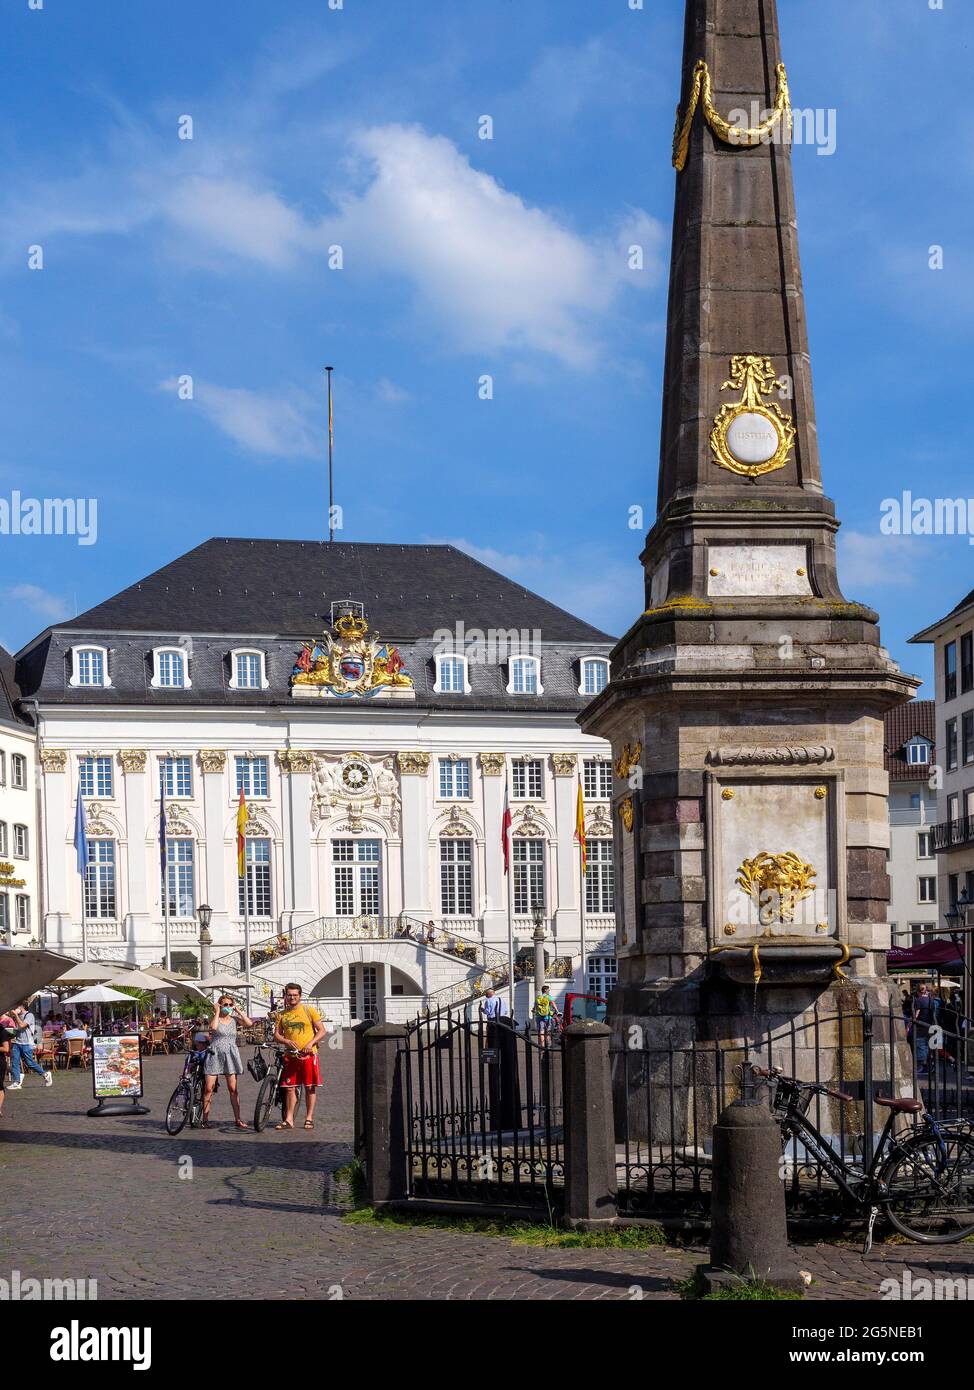 Place du marché, ancienne mairie, Bonn, Rhénanie-du-Nord-Westphalie, Allemagne, Europe Banque D'Images